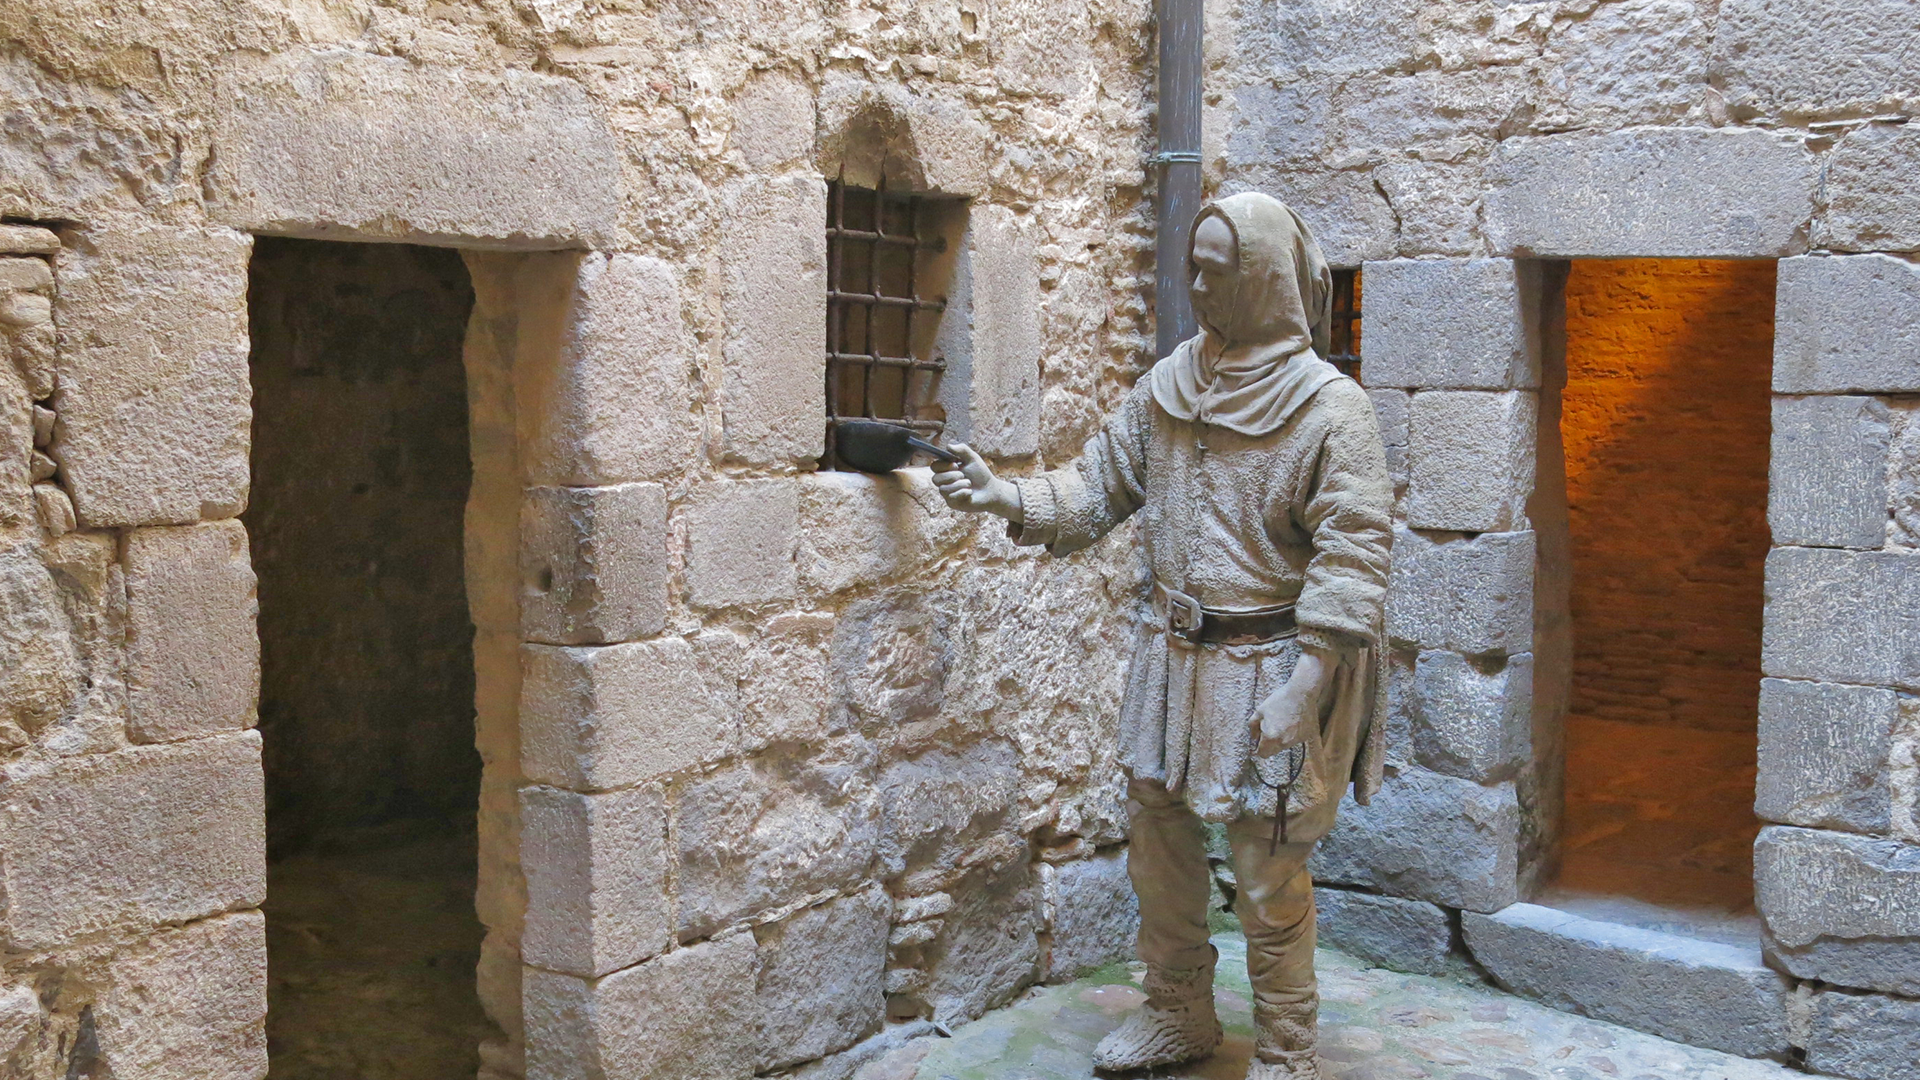 No et perdis les inscripcions que van deixar els presoners d'aquesta presó medieval de Catalunya